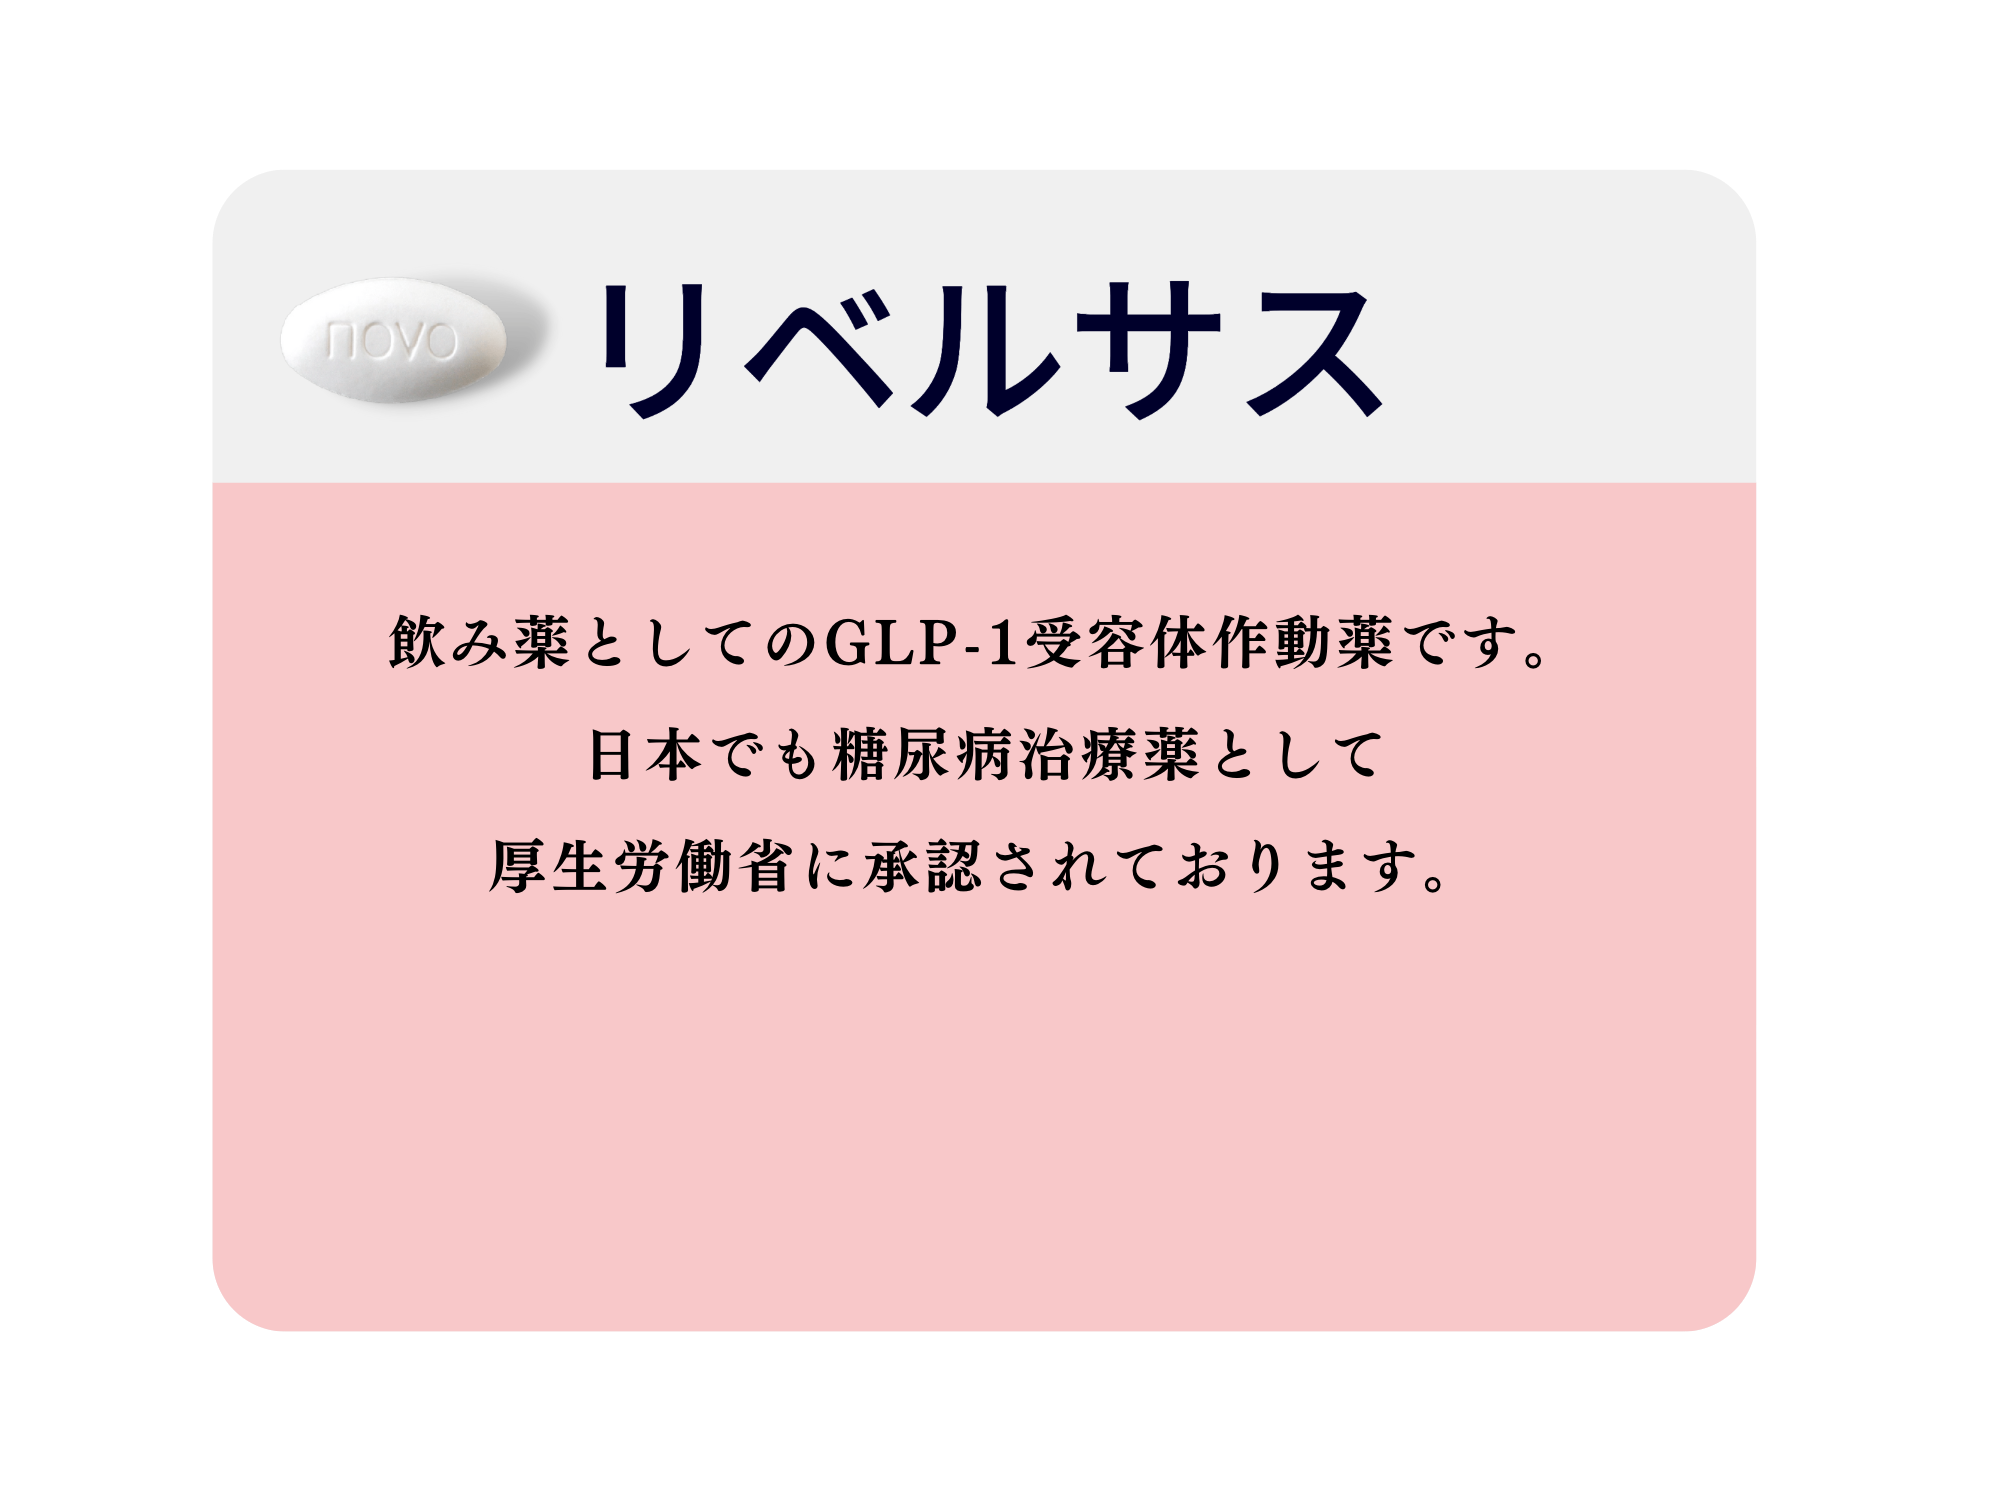 飲み薬としてのGLP-1受容体作動薬です。
日本でも糖尿病治療薬として
厚生労働省に承認されております。